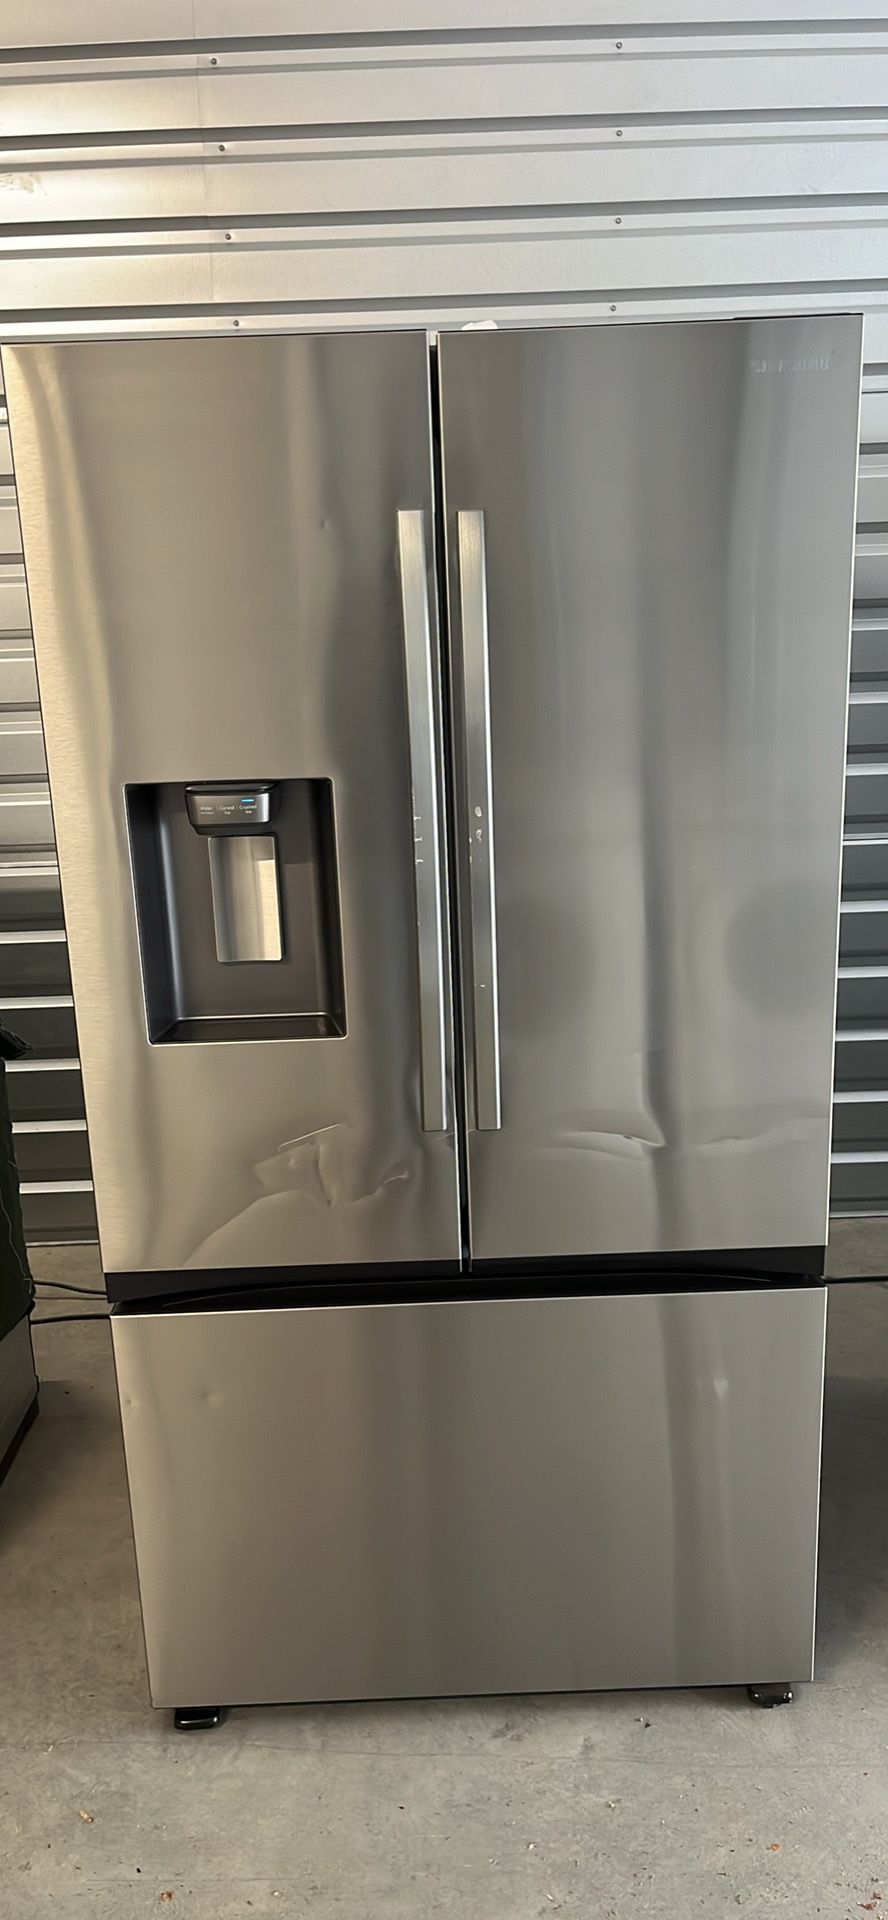 🌟 Premium Refrigerator Alert! Bespoke 3-Door French Door Refrigerator 🌟